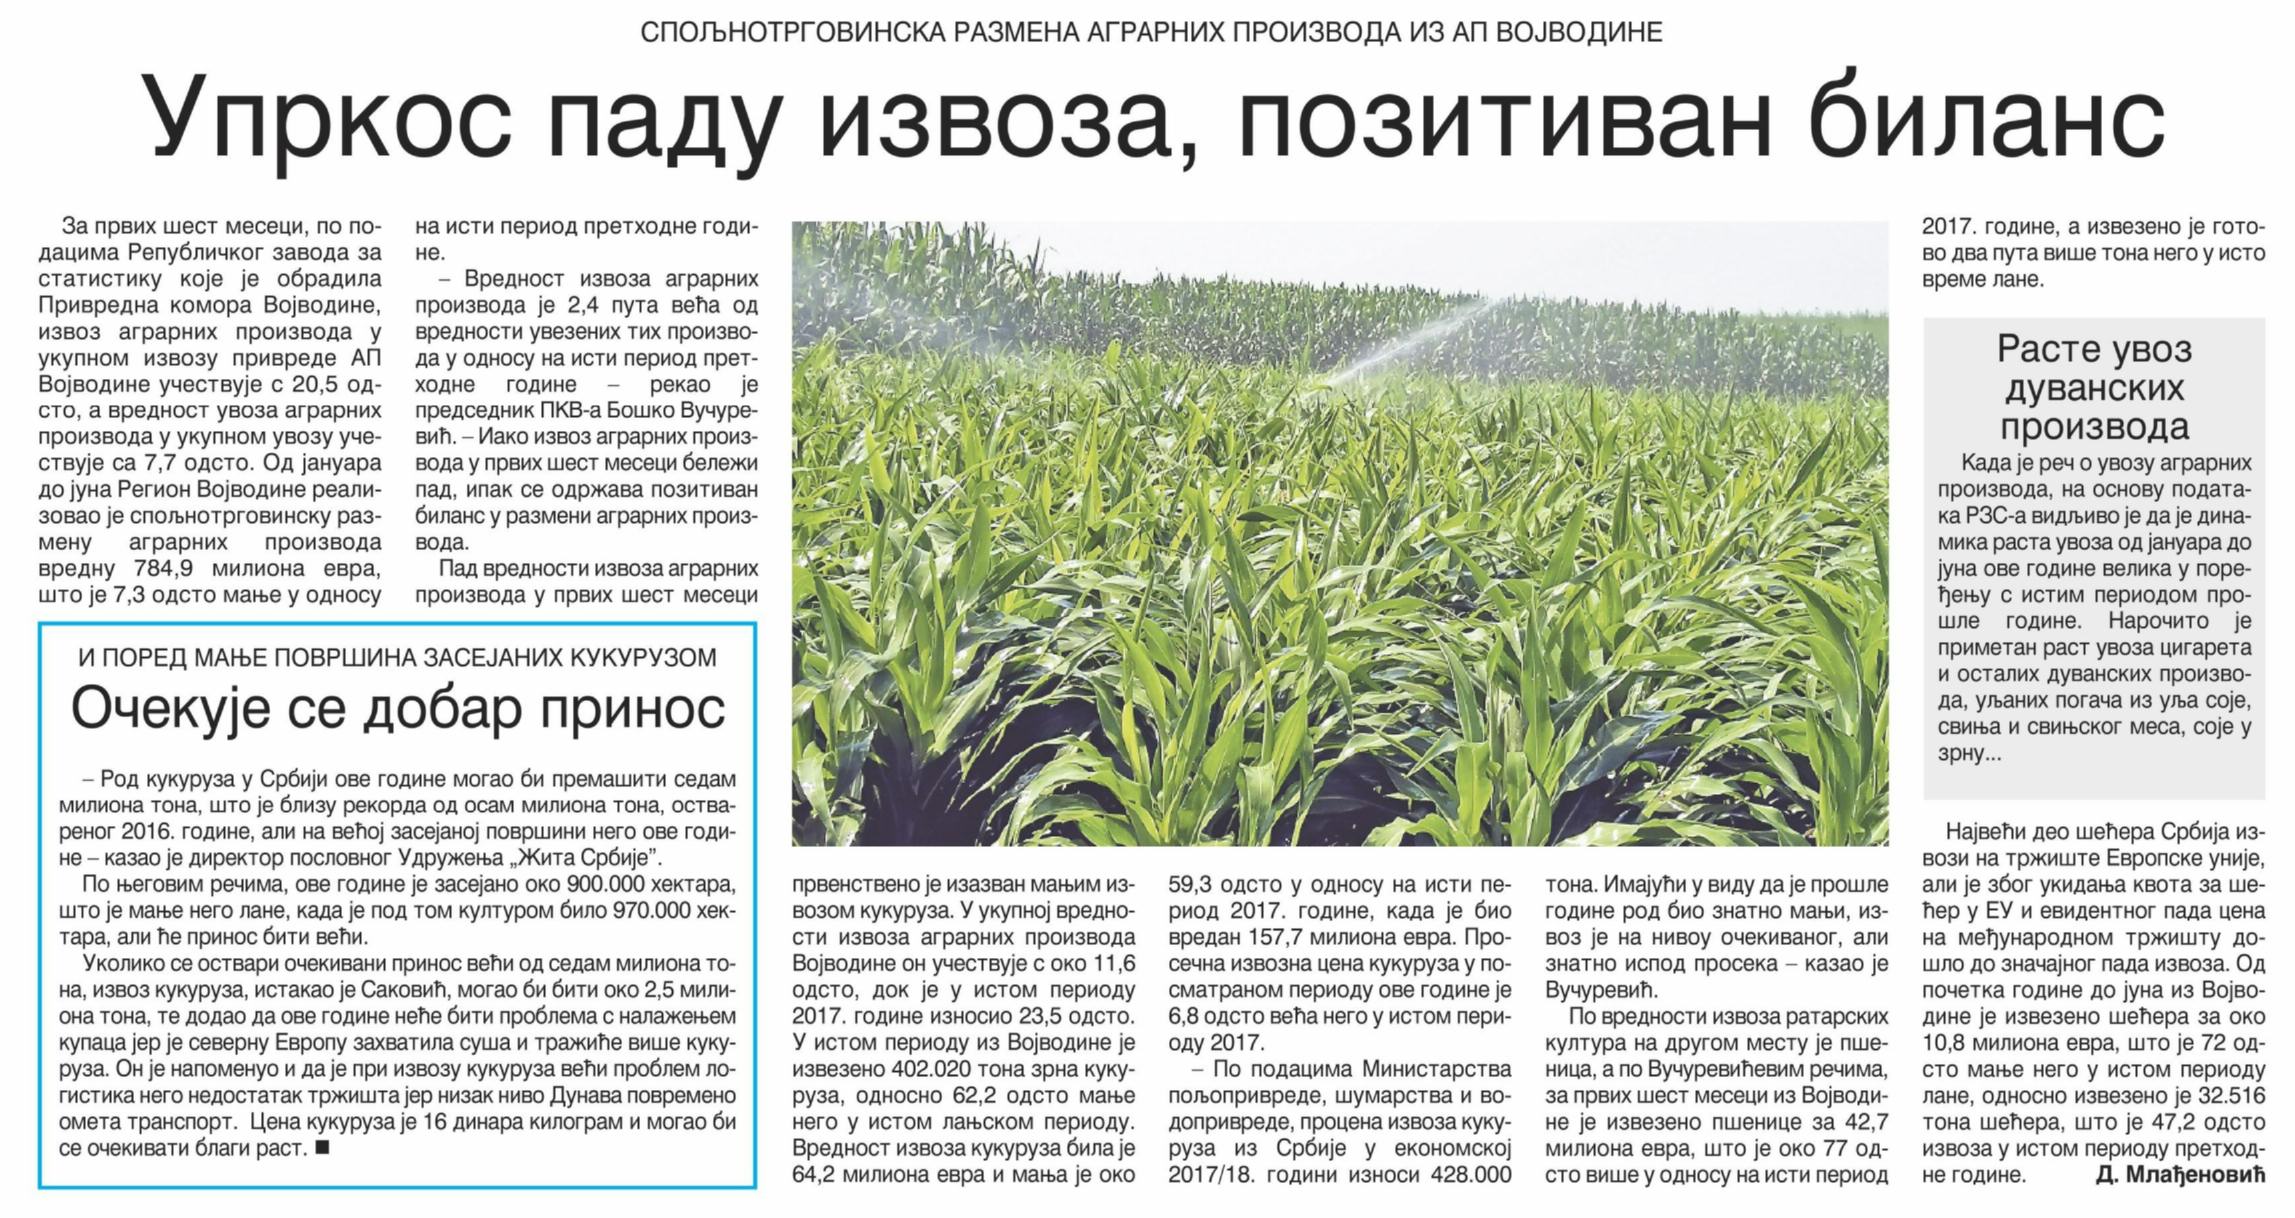 Спољнотрговинска размена аграрних производа Војводине у првој половини 2018. године